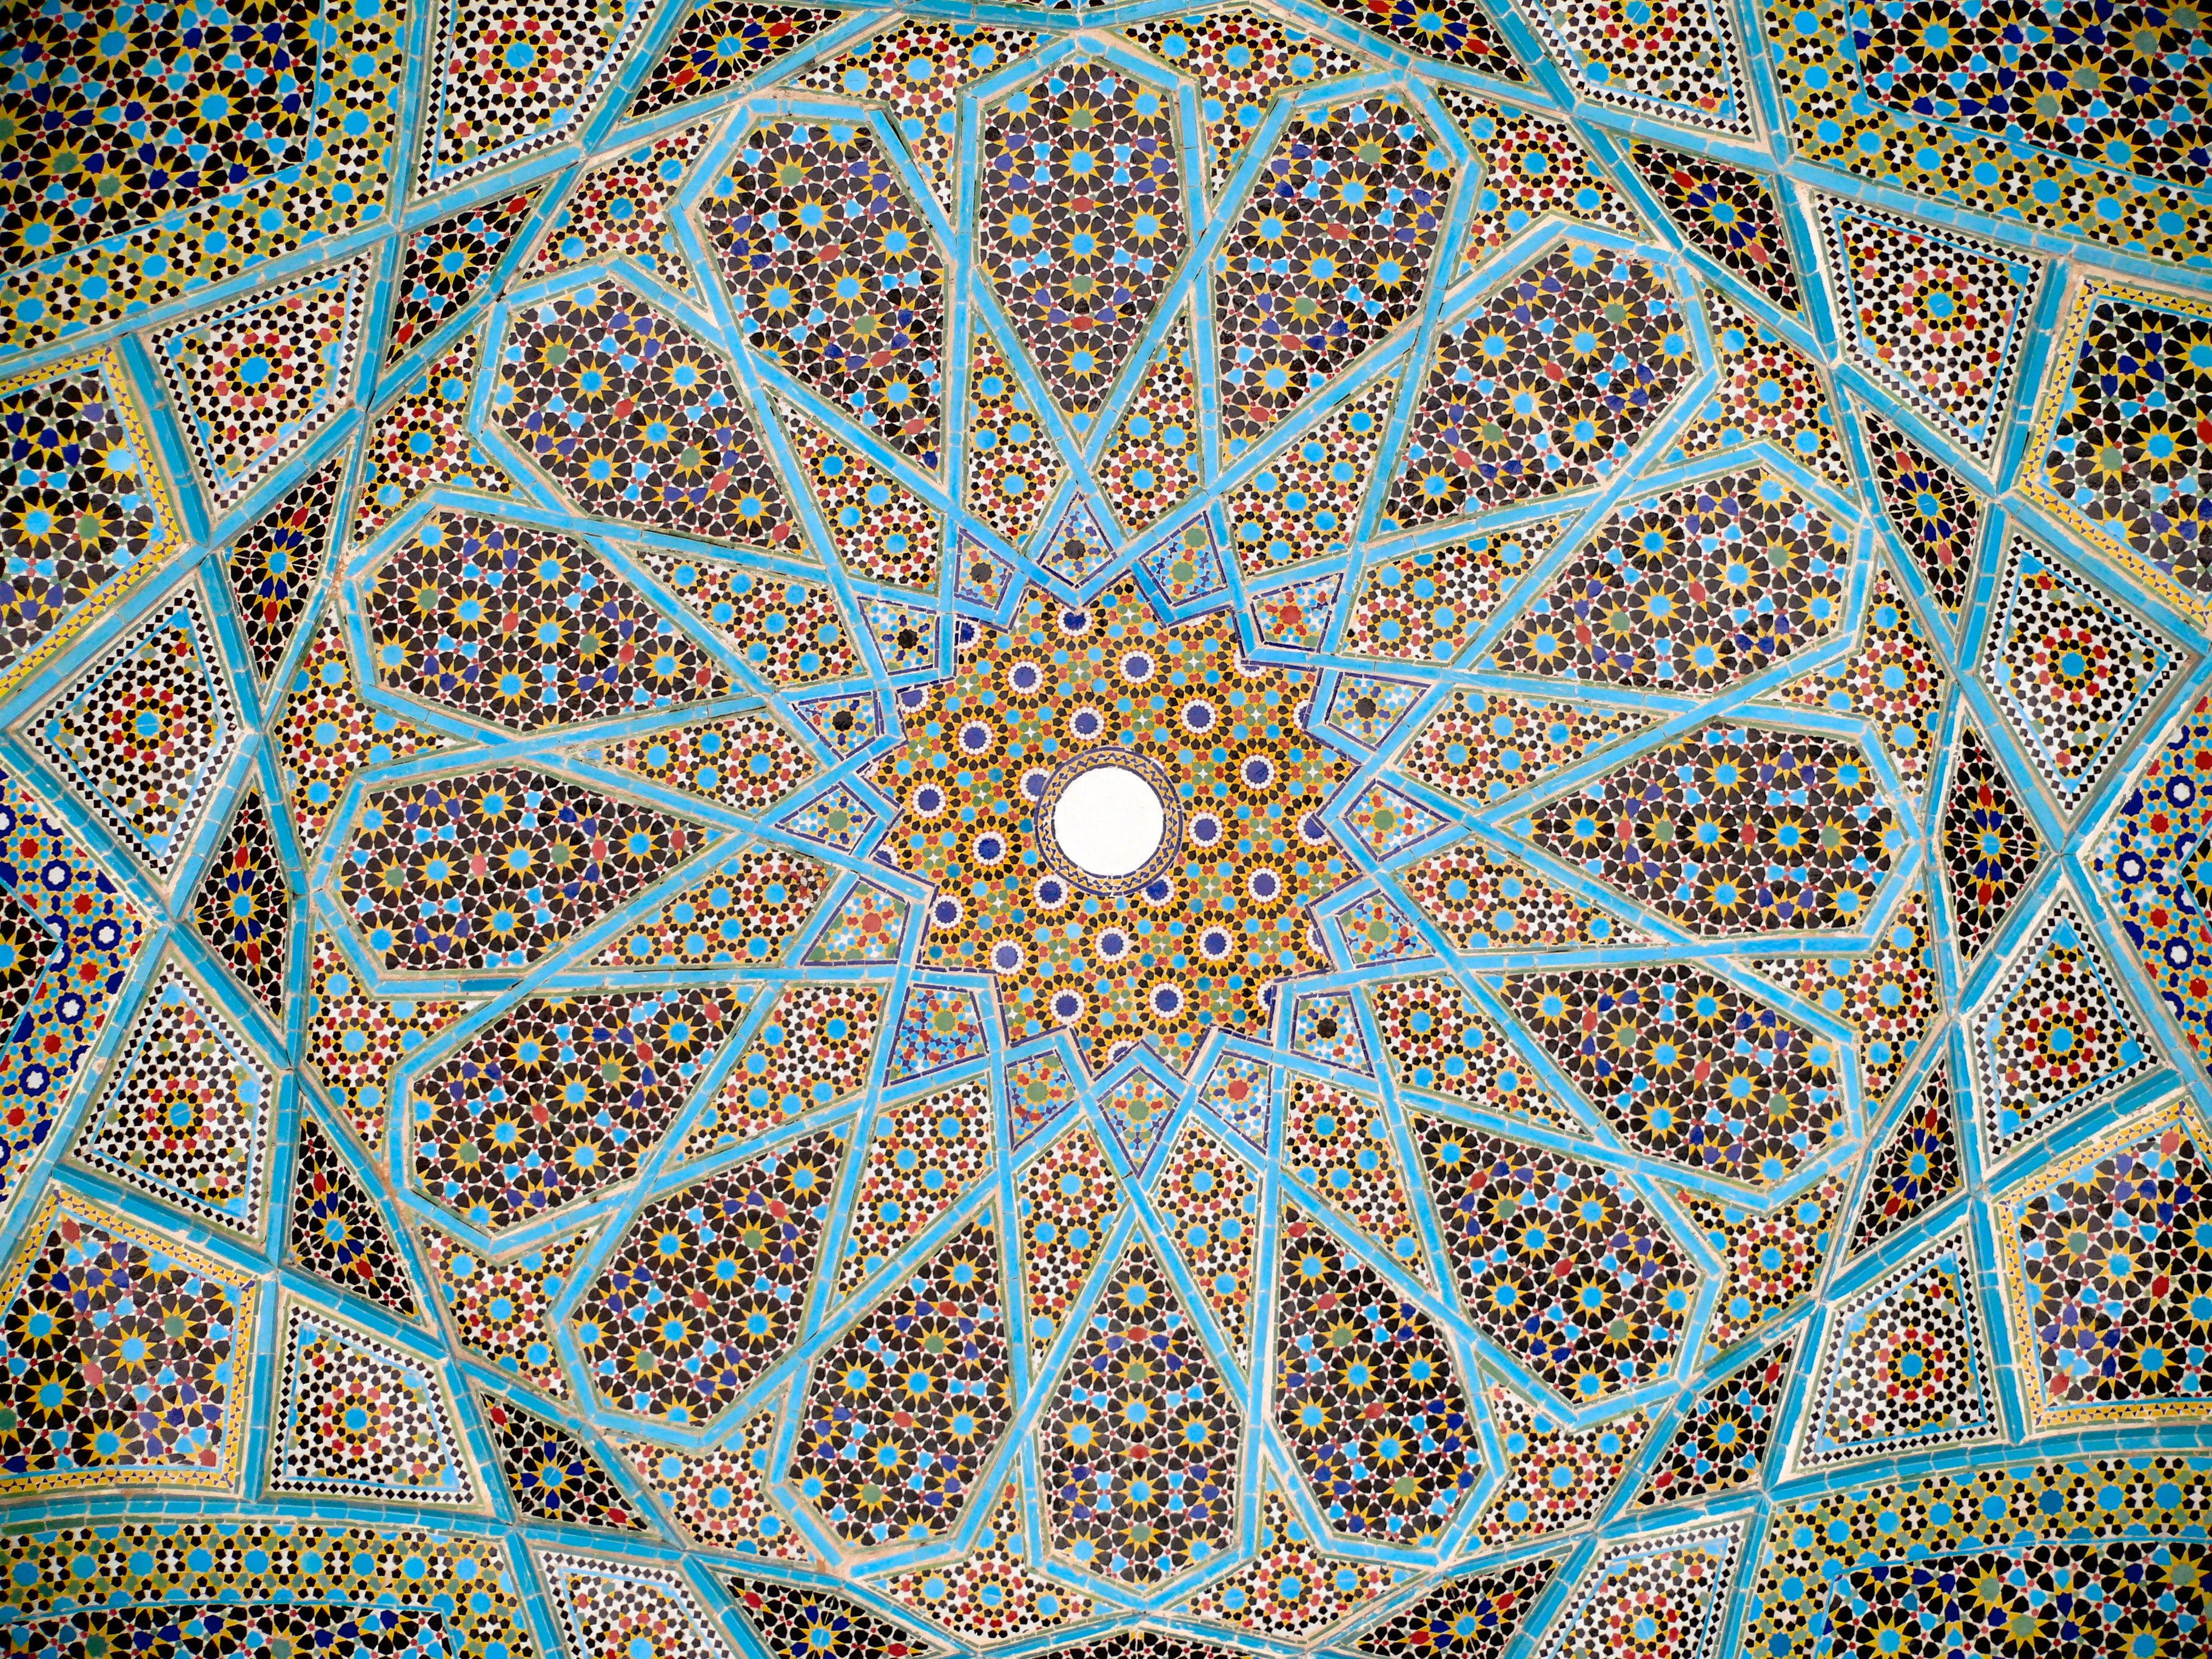 Diseño de un techo con un mosaico de cerámica iraní, en la tumba de Hafez en Shiraz, Irán, provincia de Fars. En su mayoría, la cerámica es de color azul claro, marrón y verde.